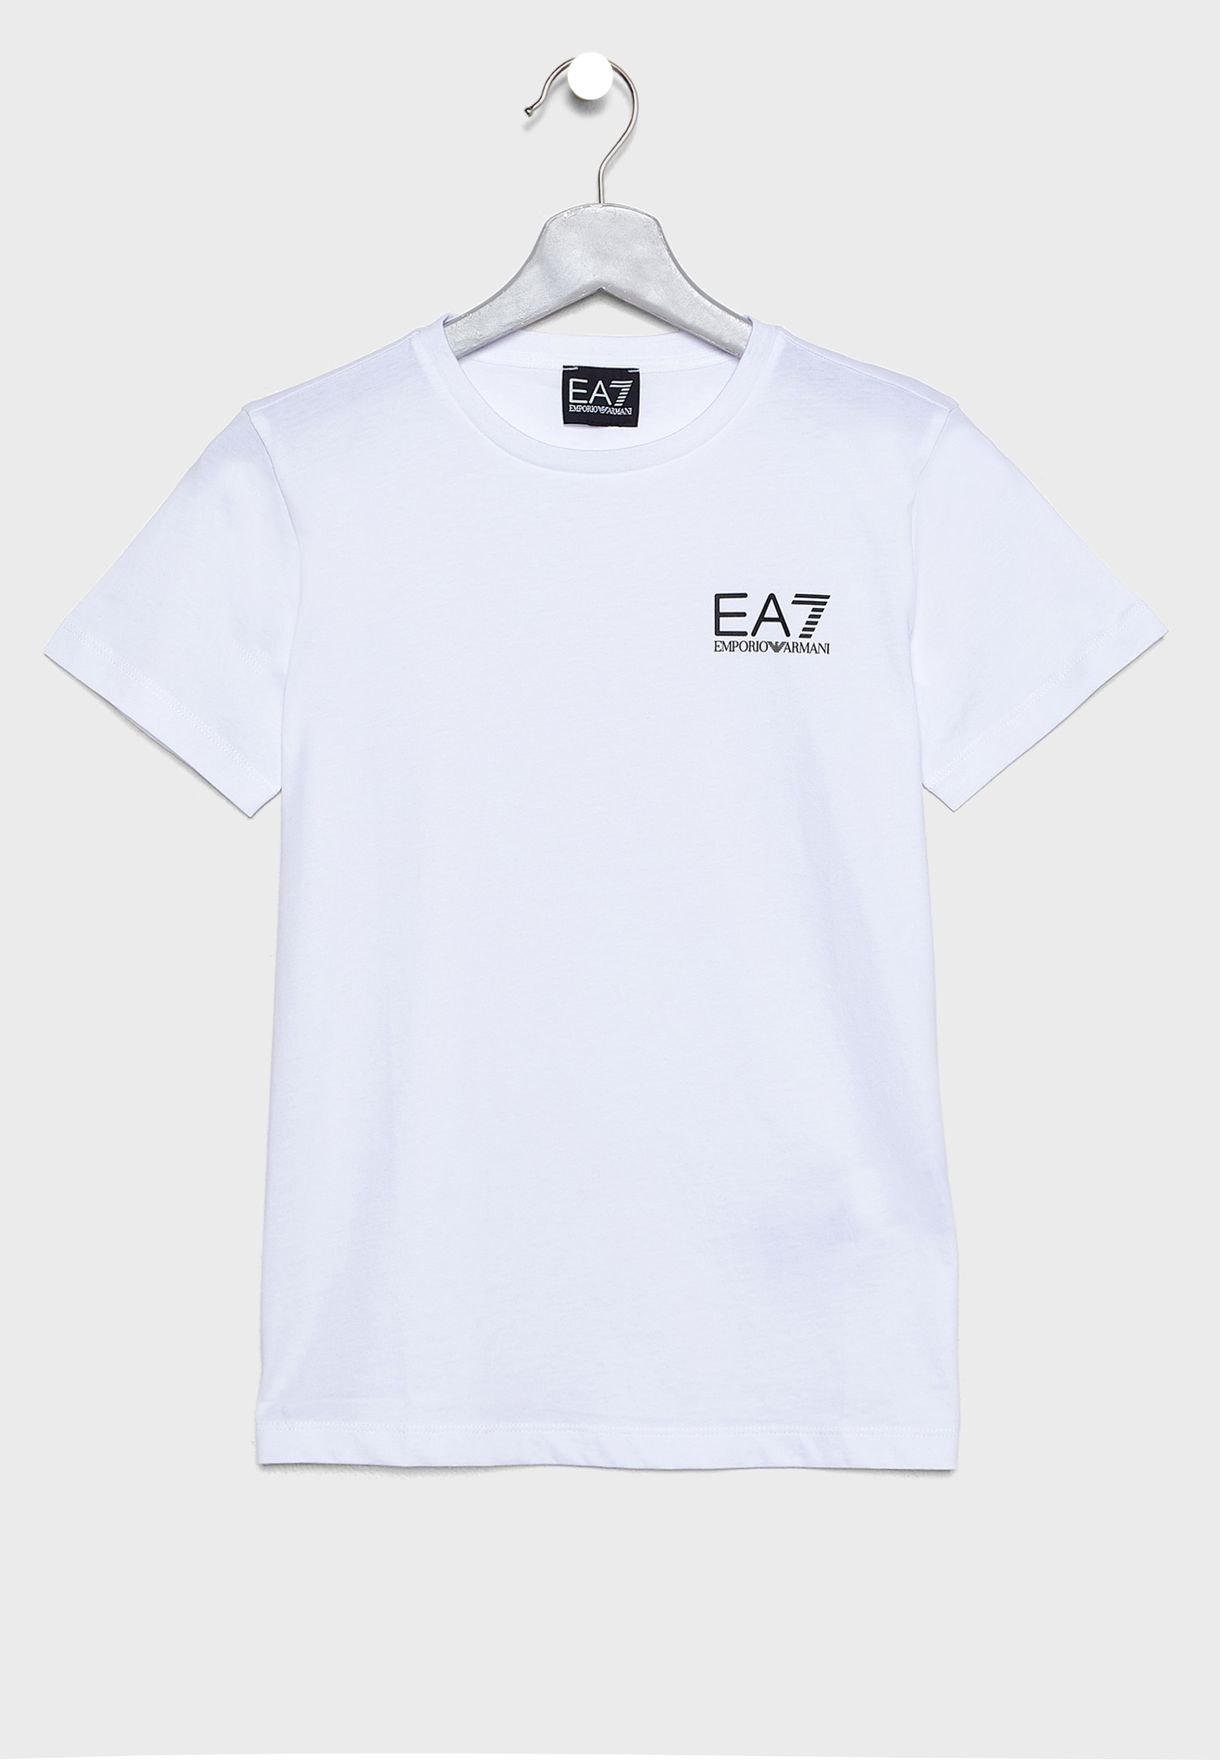 ea7 shirt kids